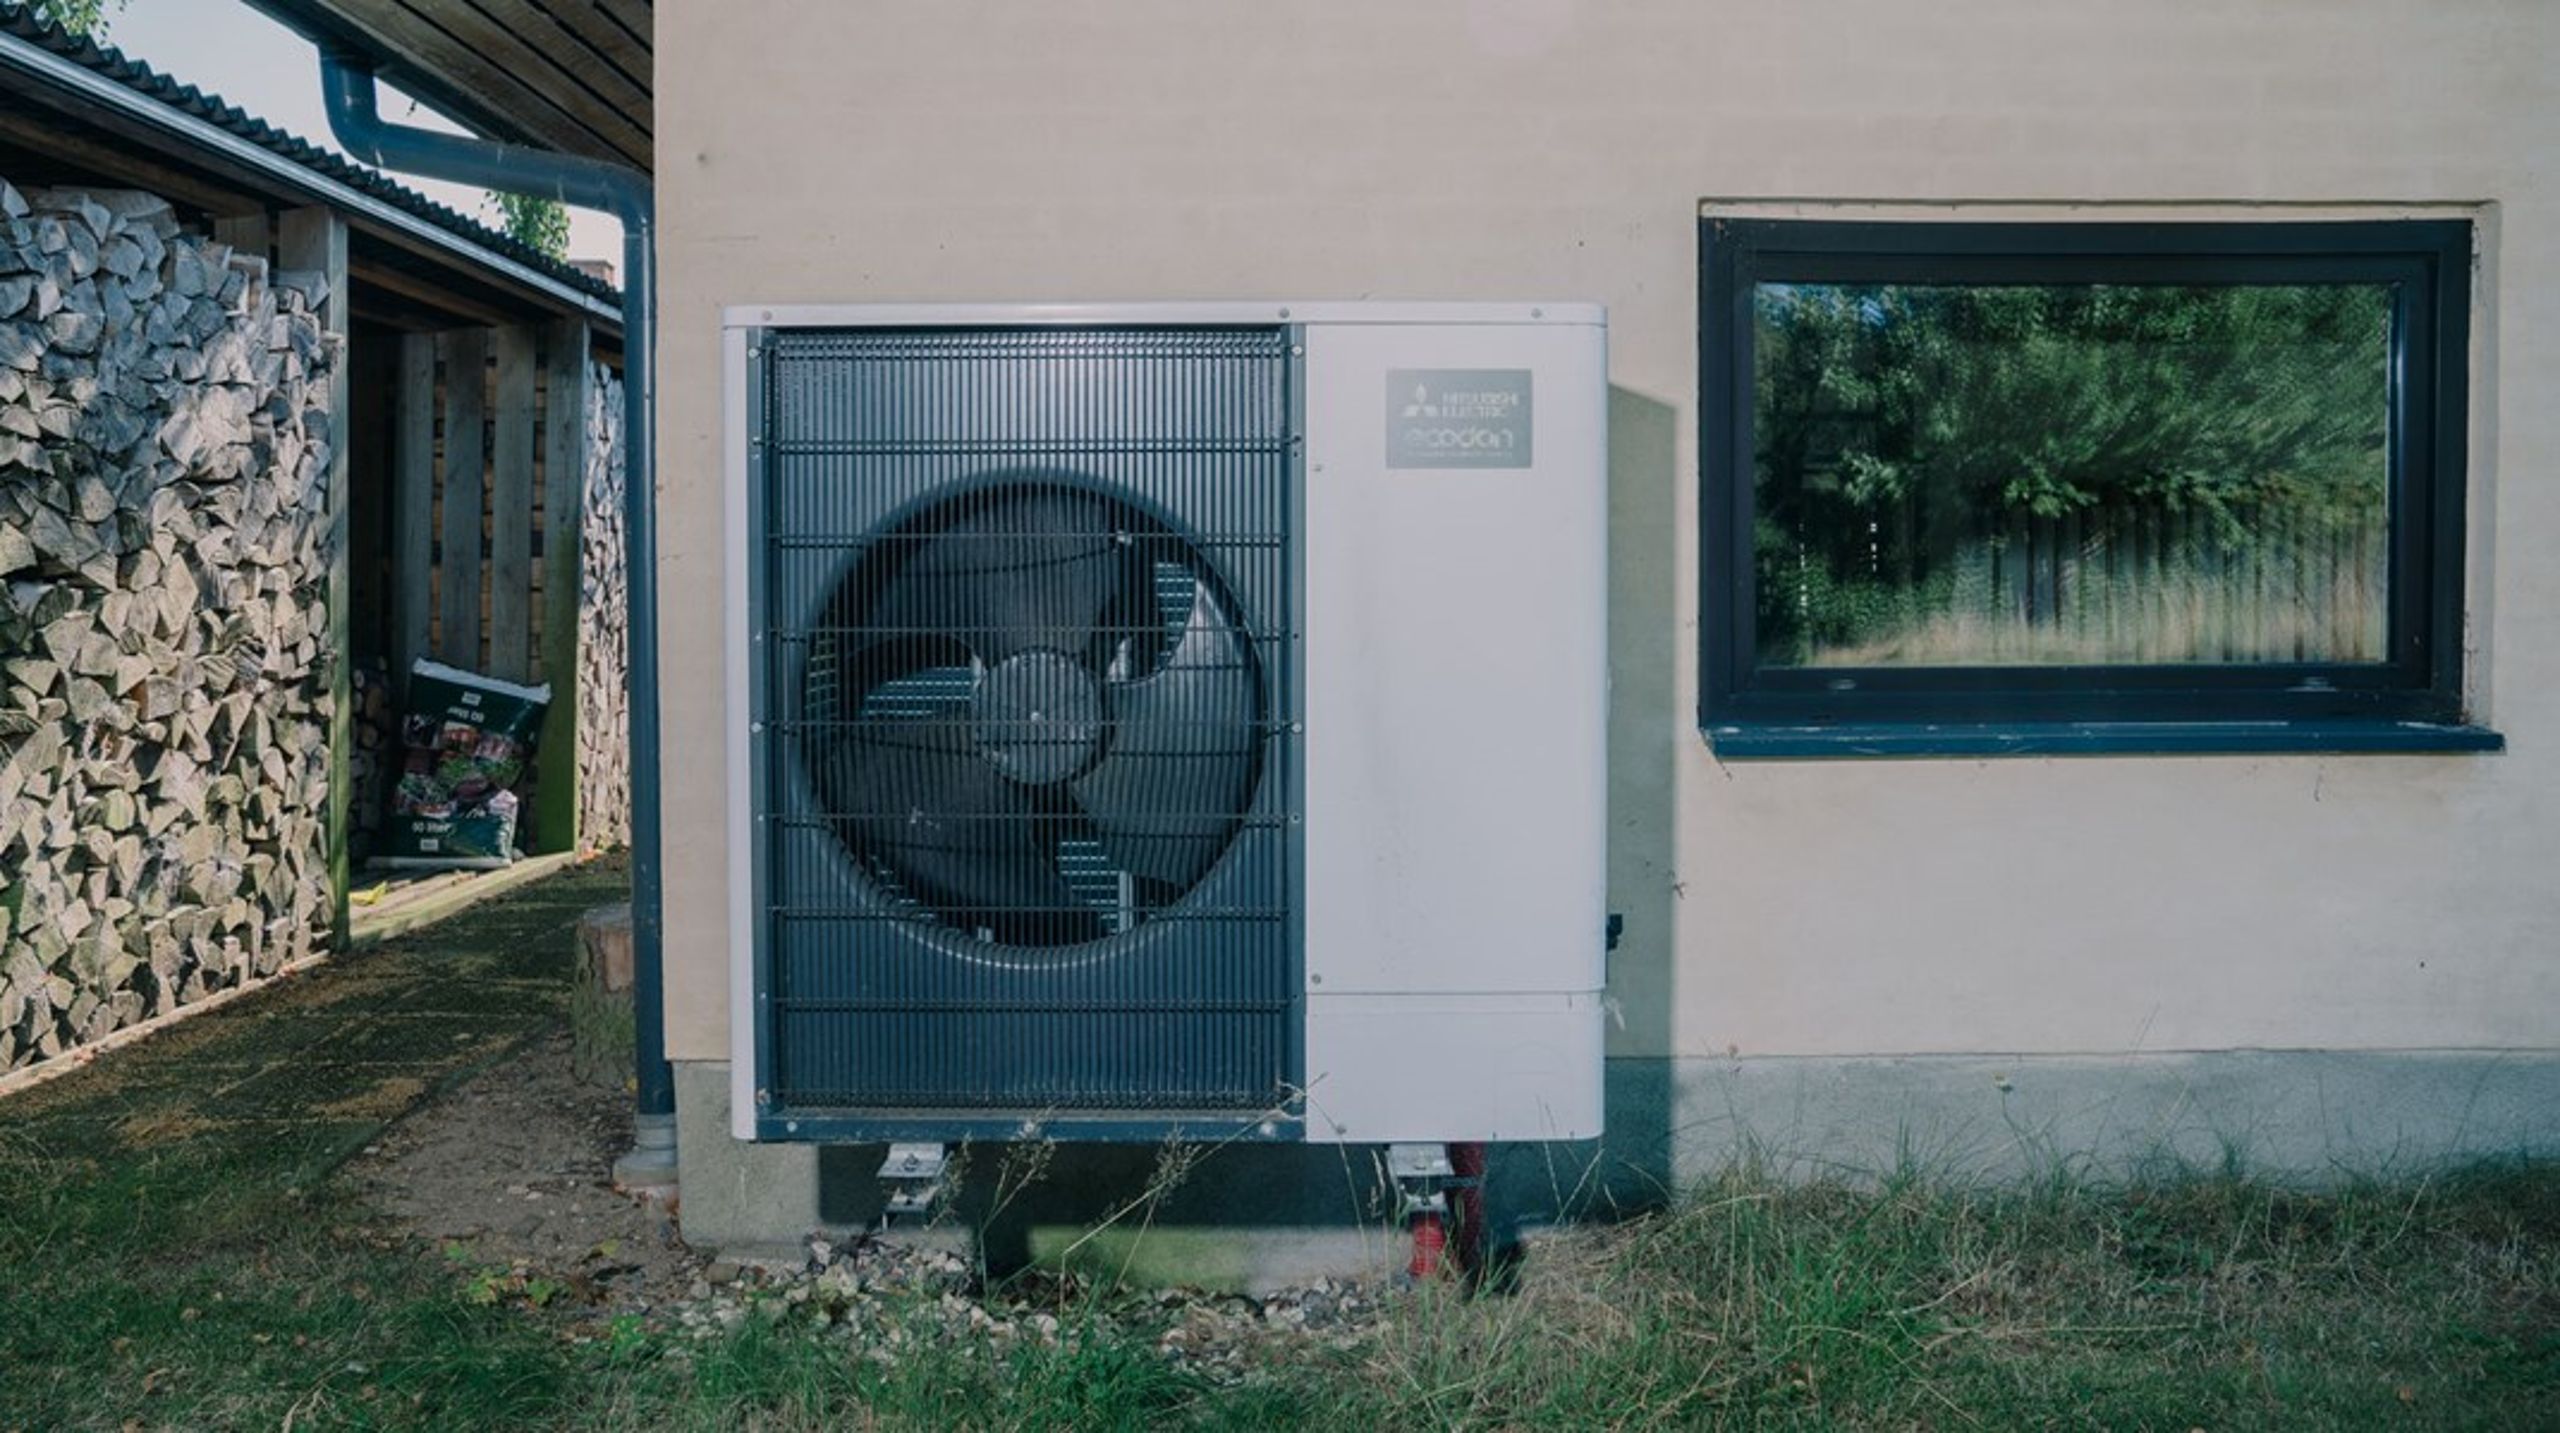 Ifølge Klimarådet bør over 150.000 af landets tilbageværende 310.000 huse med naturgasfyr tilskyndes til at vælge individuelle varmepumper og dermed den grønne strøm. Med rettidig omhu fra alle parter kan branchen omstille dem til varmepumper på 5-6 år, skriver Helle Juhler&nbsp;Verdoner.